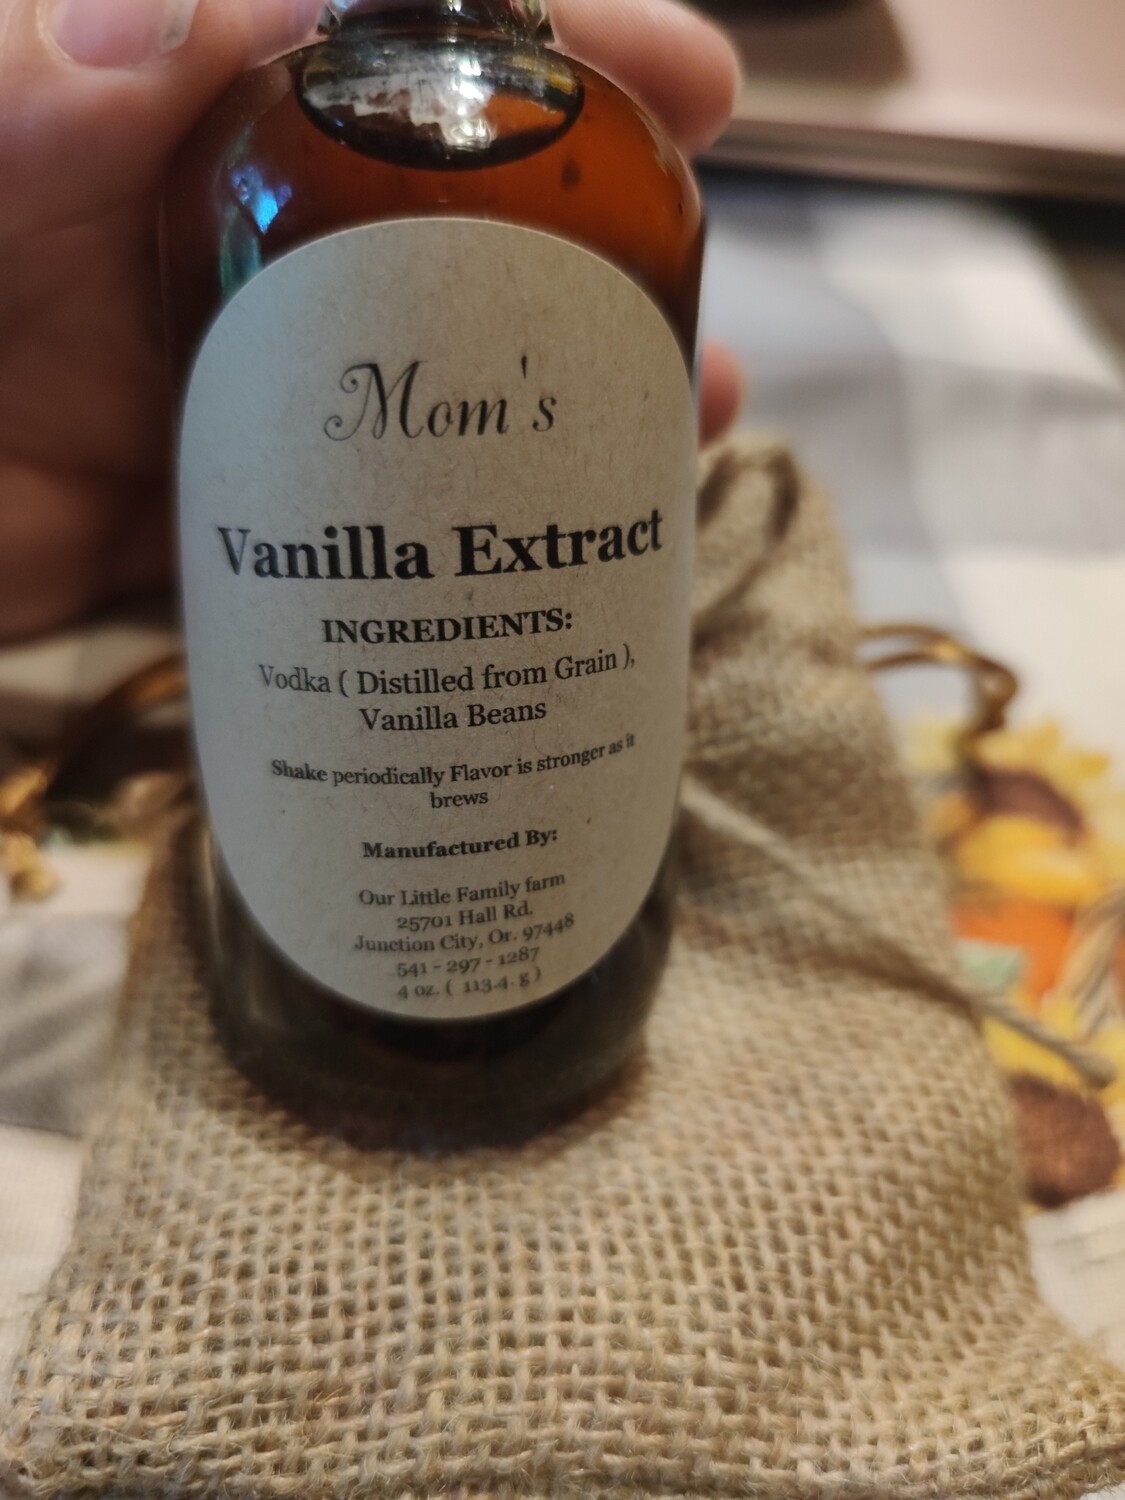 Mom's Vanilla Extract (vodka)